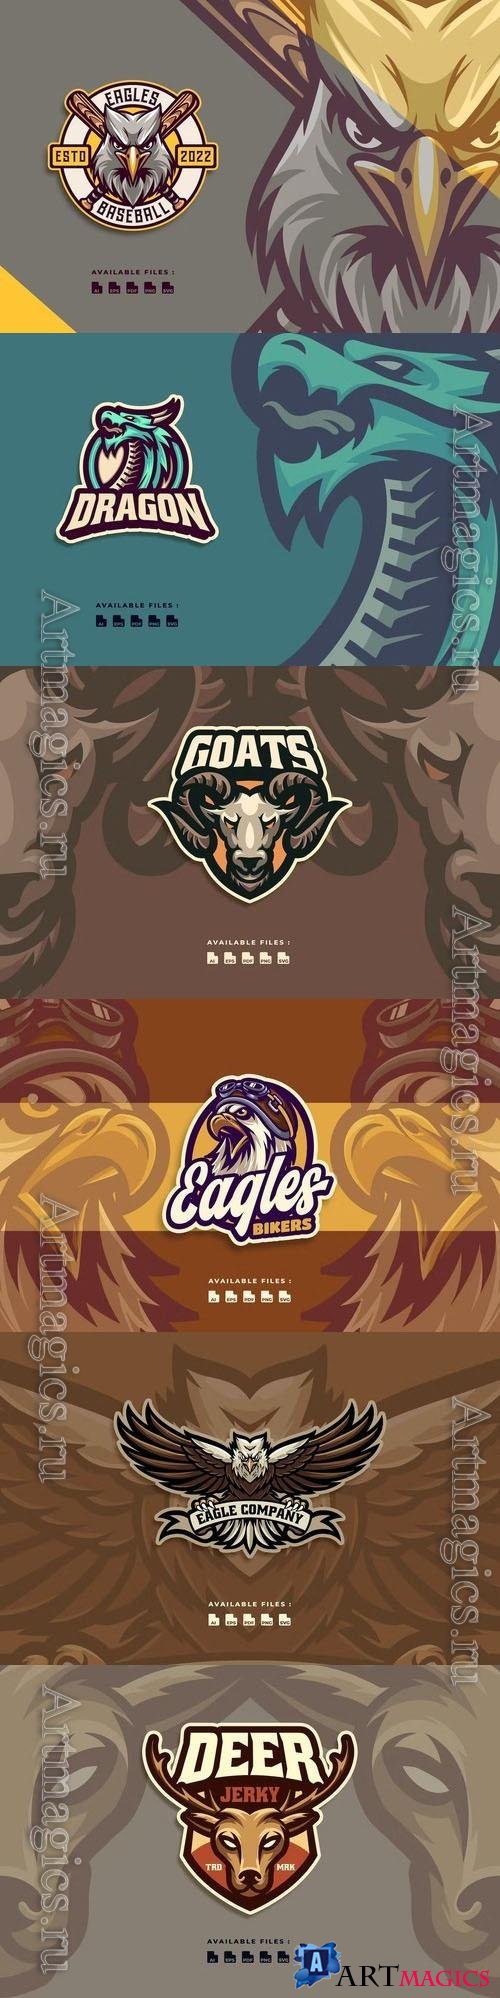 Eagle, deer sport, goat, dragon logo set